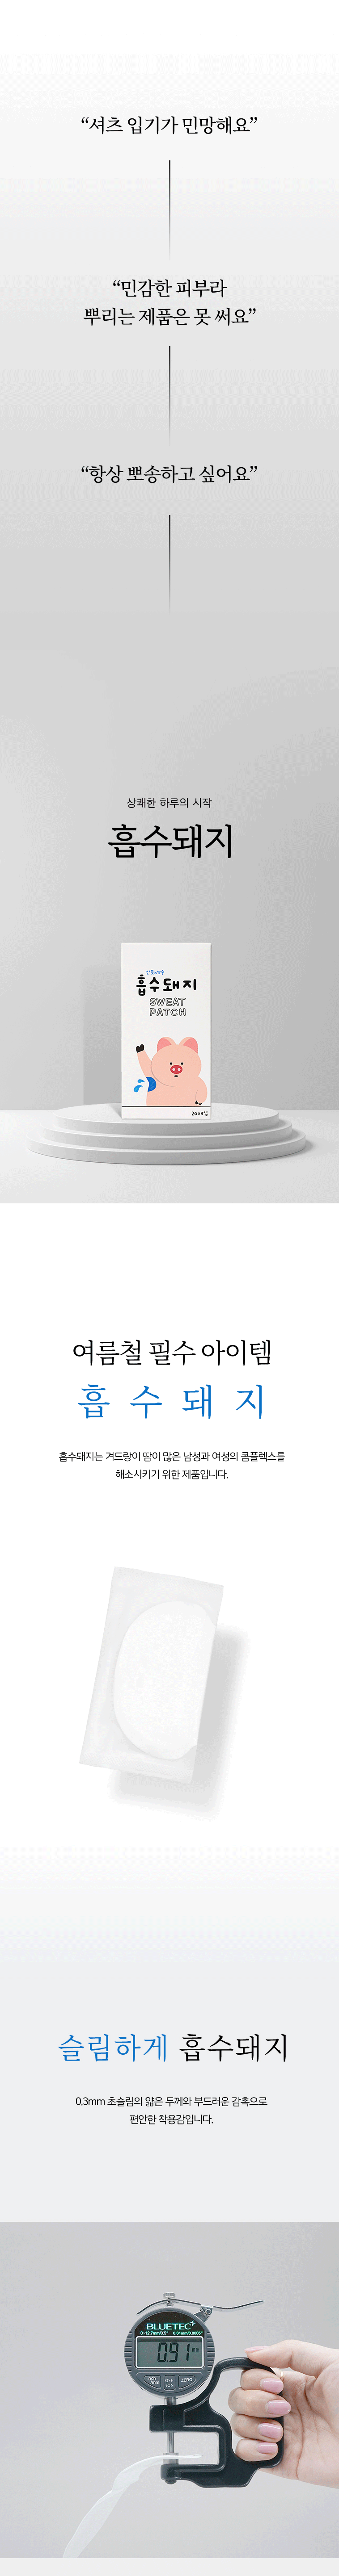 [full]-흡수돼지-상세페이지-복사_01.gif